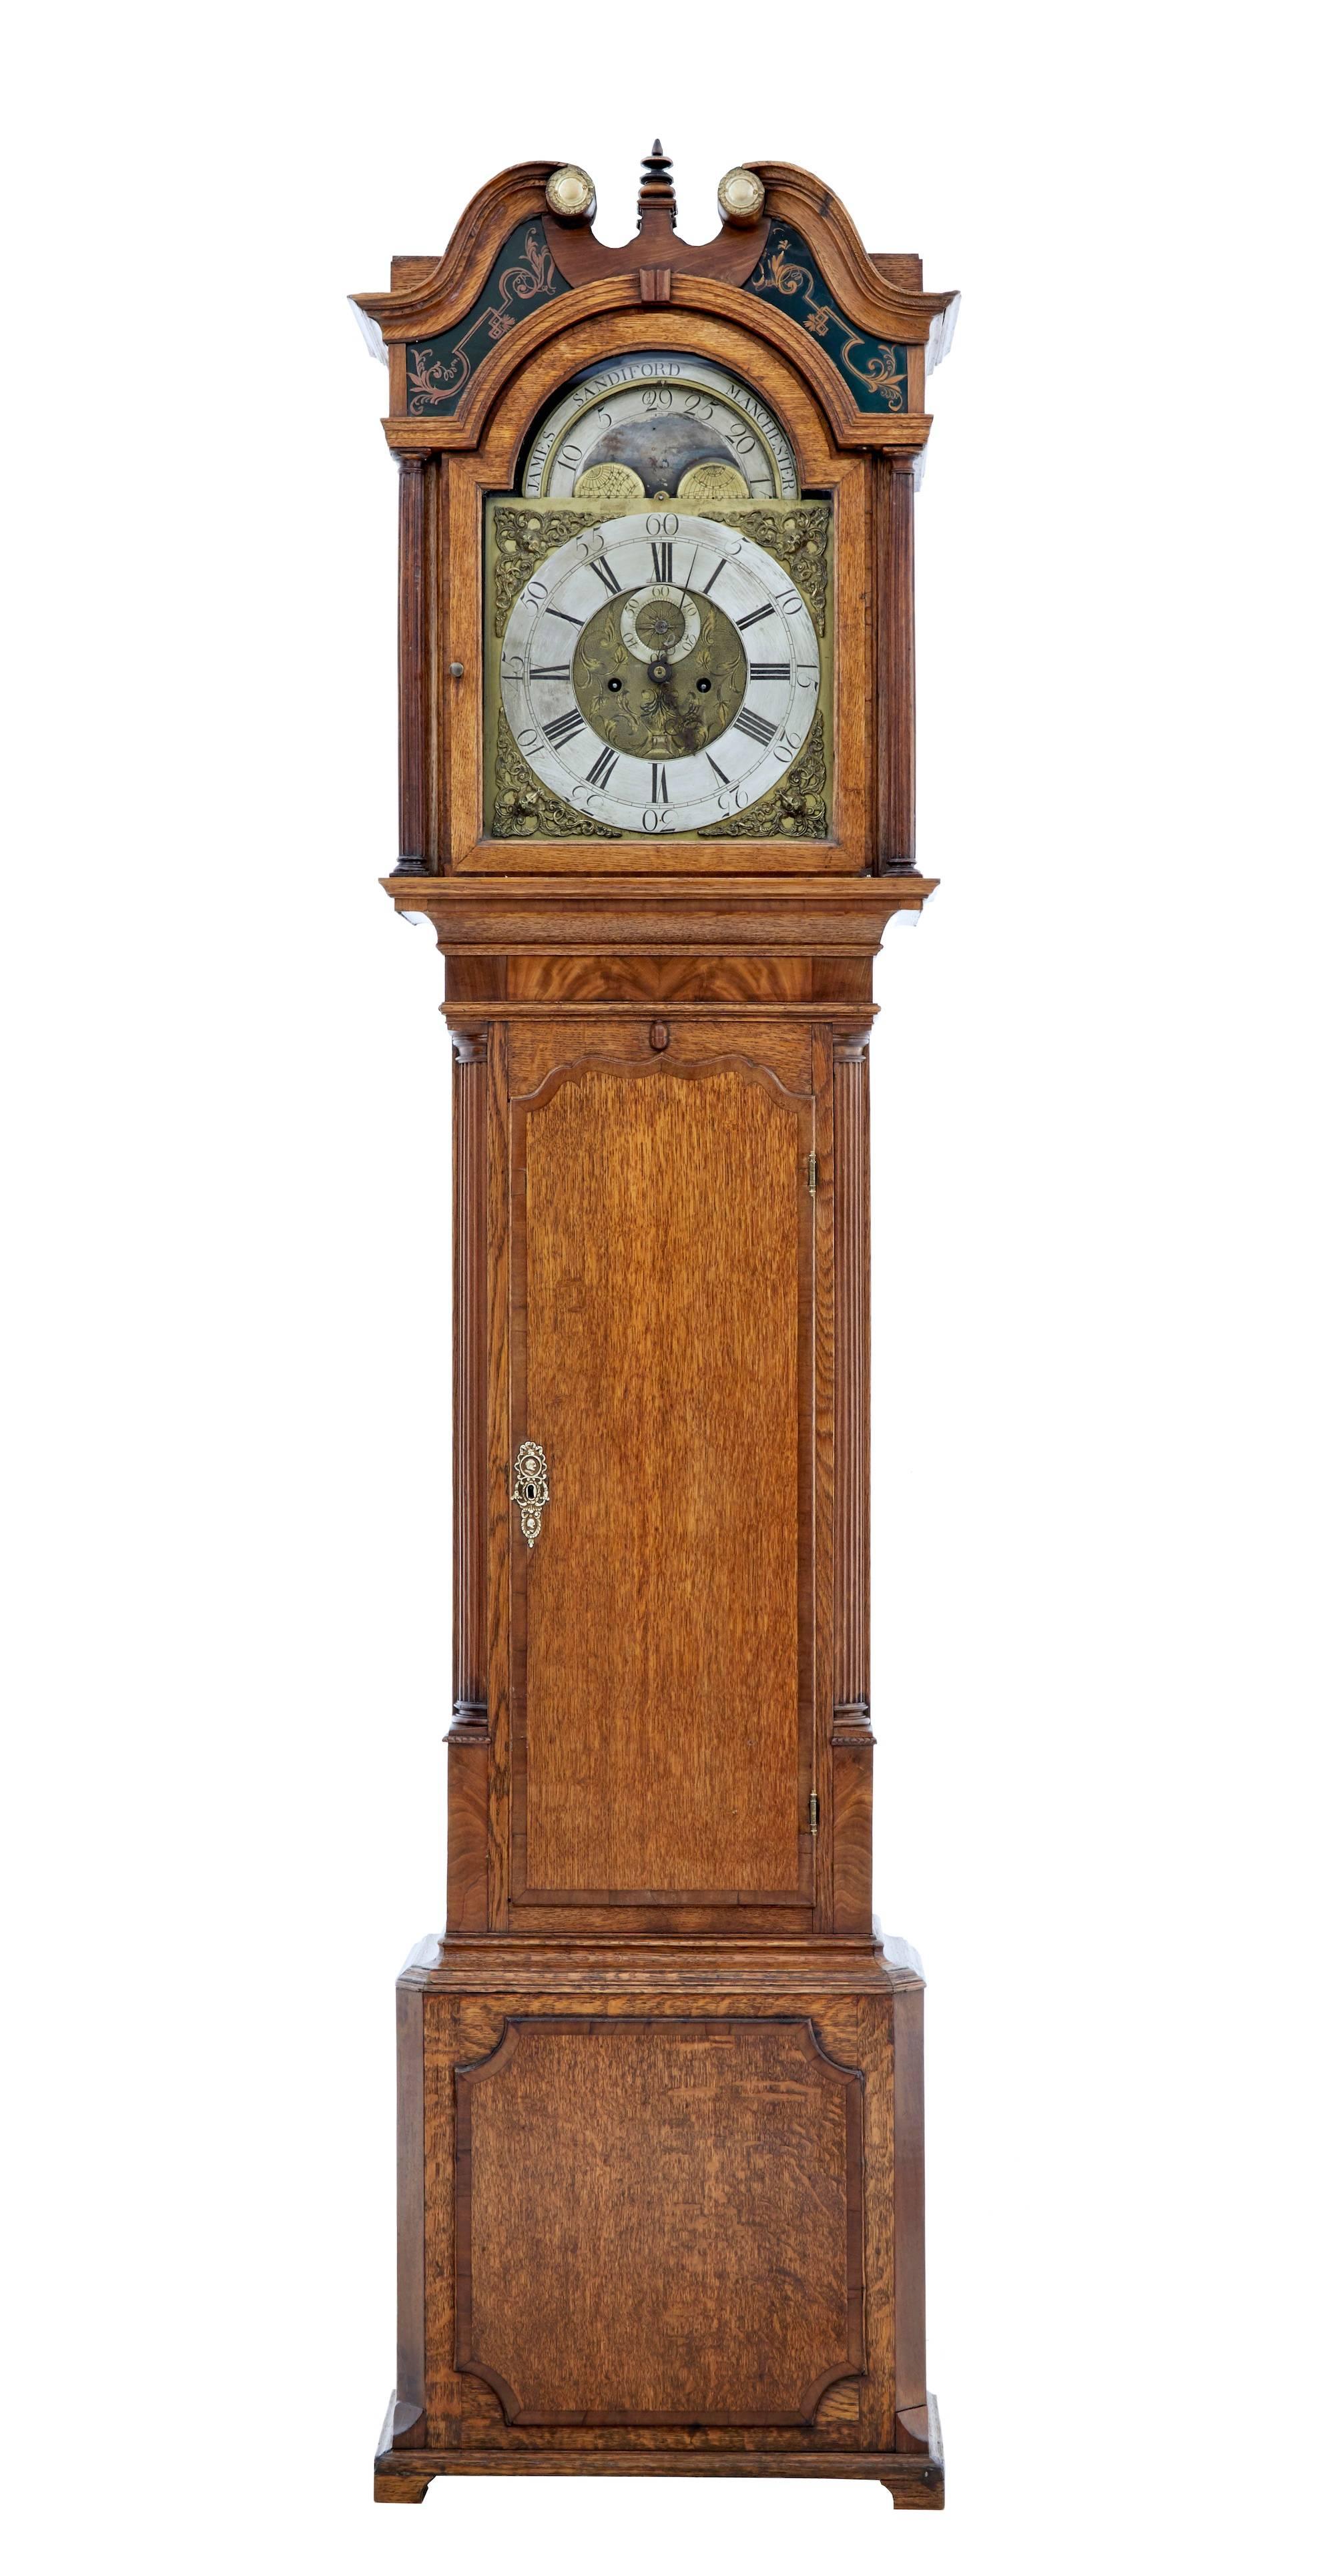 George II Eiche Standuhr:: um 1750
Uhrwerk hergestellt und signiert von dem bekannten Uhrmacher James Sandiford aus Manchester. 
Uhrwerk mit römischen und arabischen Ziffern und Kalender. 
Dieses Uhrwerk wird sofort nach dem Verkauf professionell